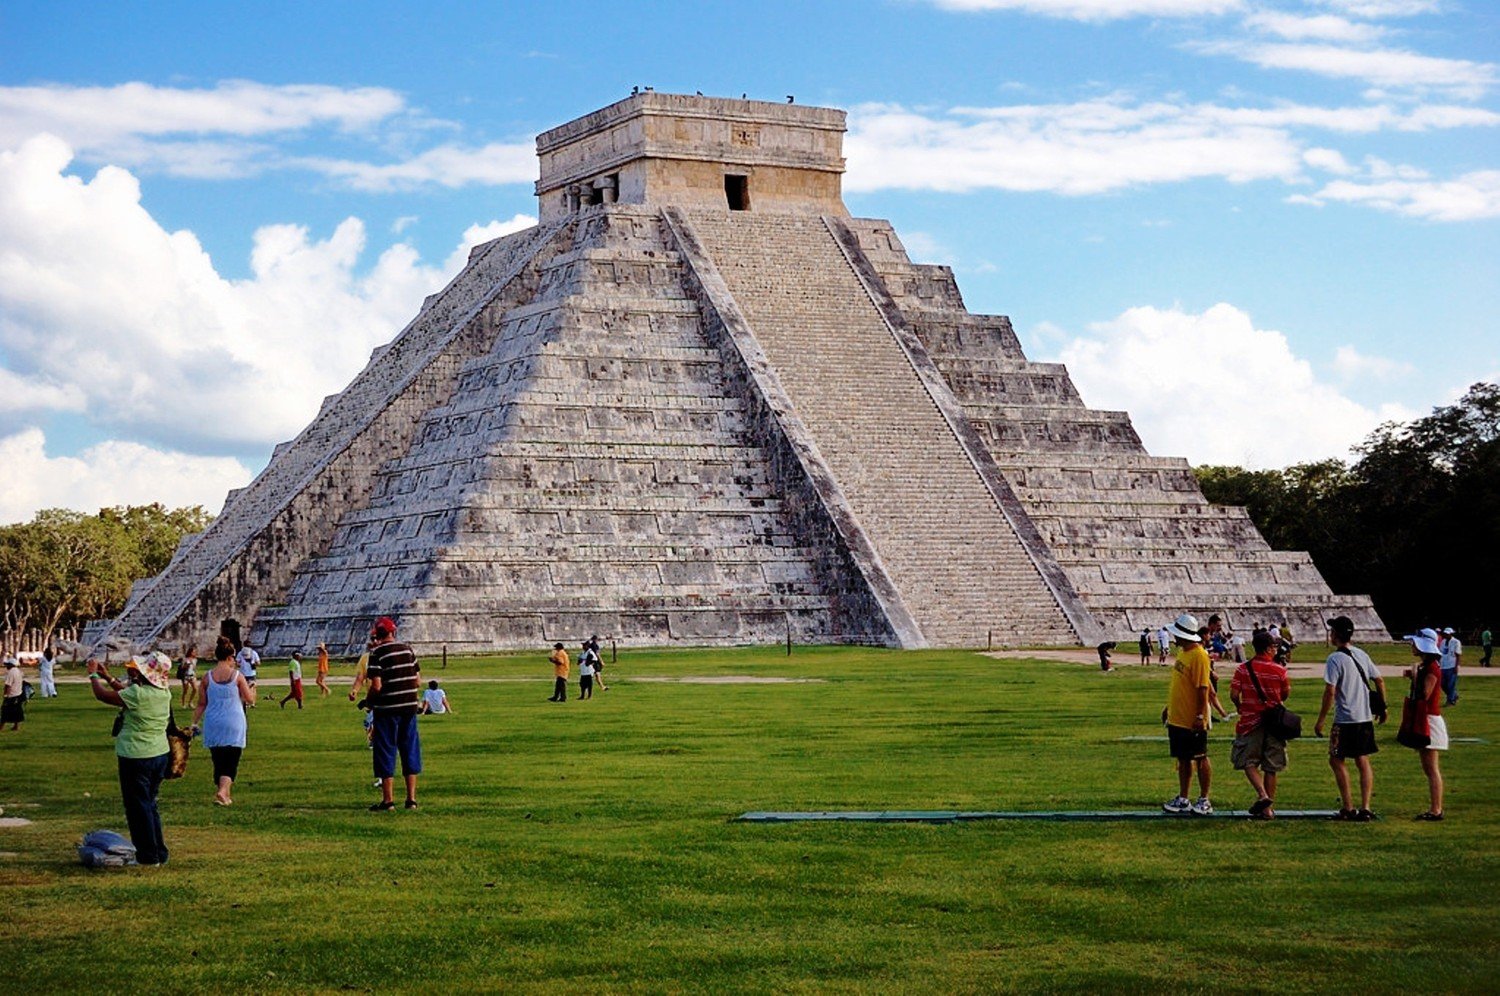 Mexico country. Мексика Мехико Канкун. Чичен ица озеро. Мексика пирамиды Майя туристическое место. Мехико достопримечательности Мехико.